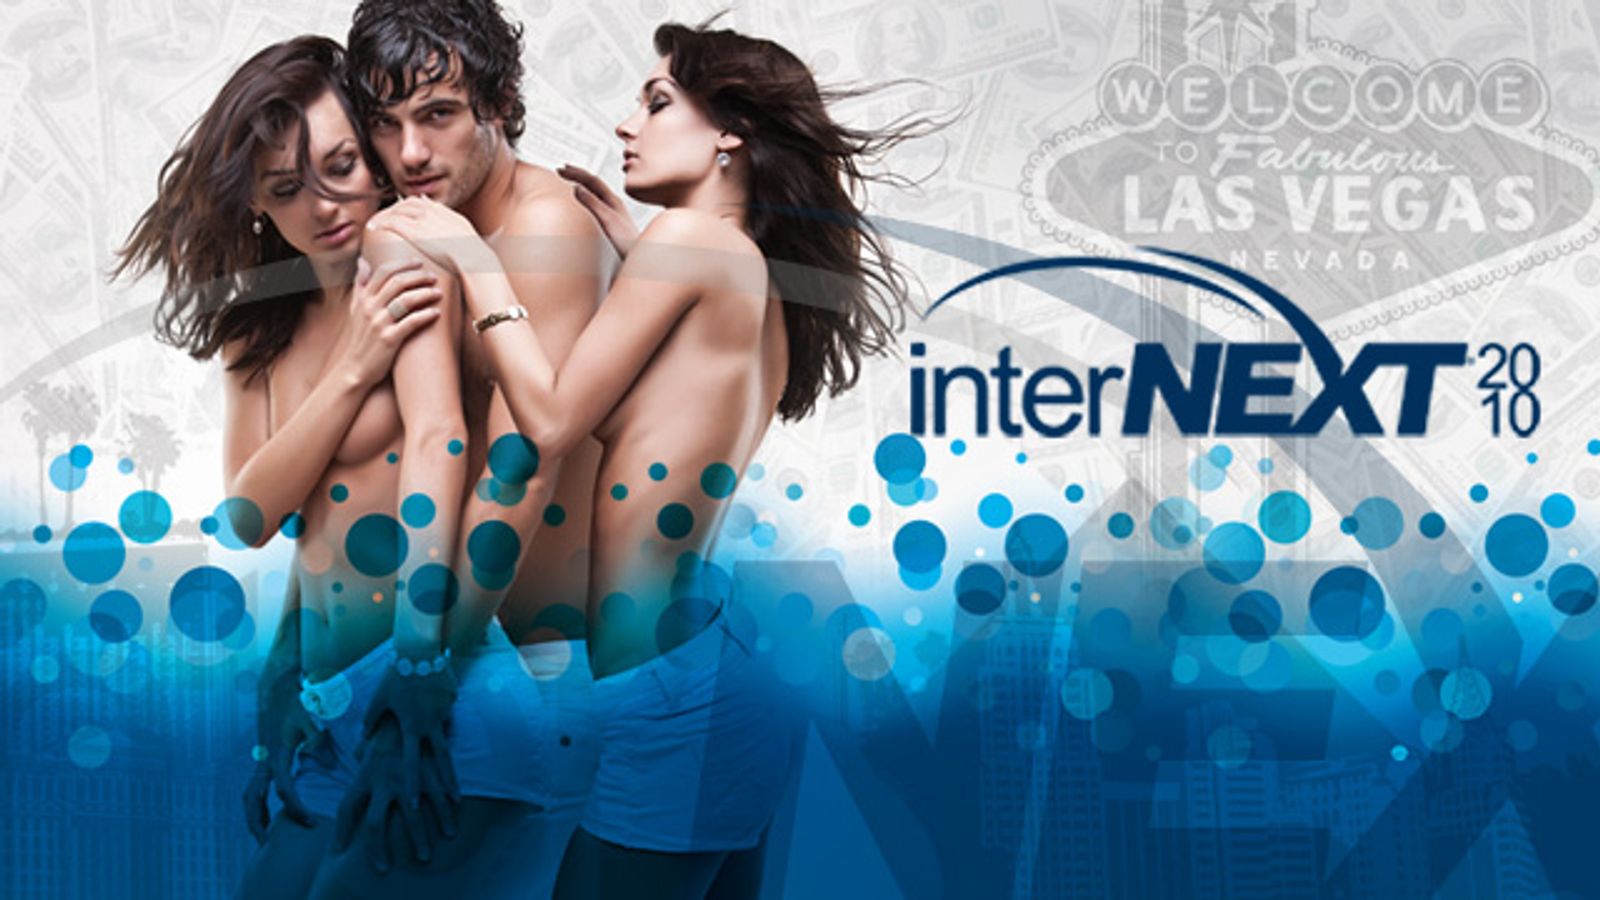 Internext Announces January Las Vegas Show Dates